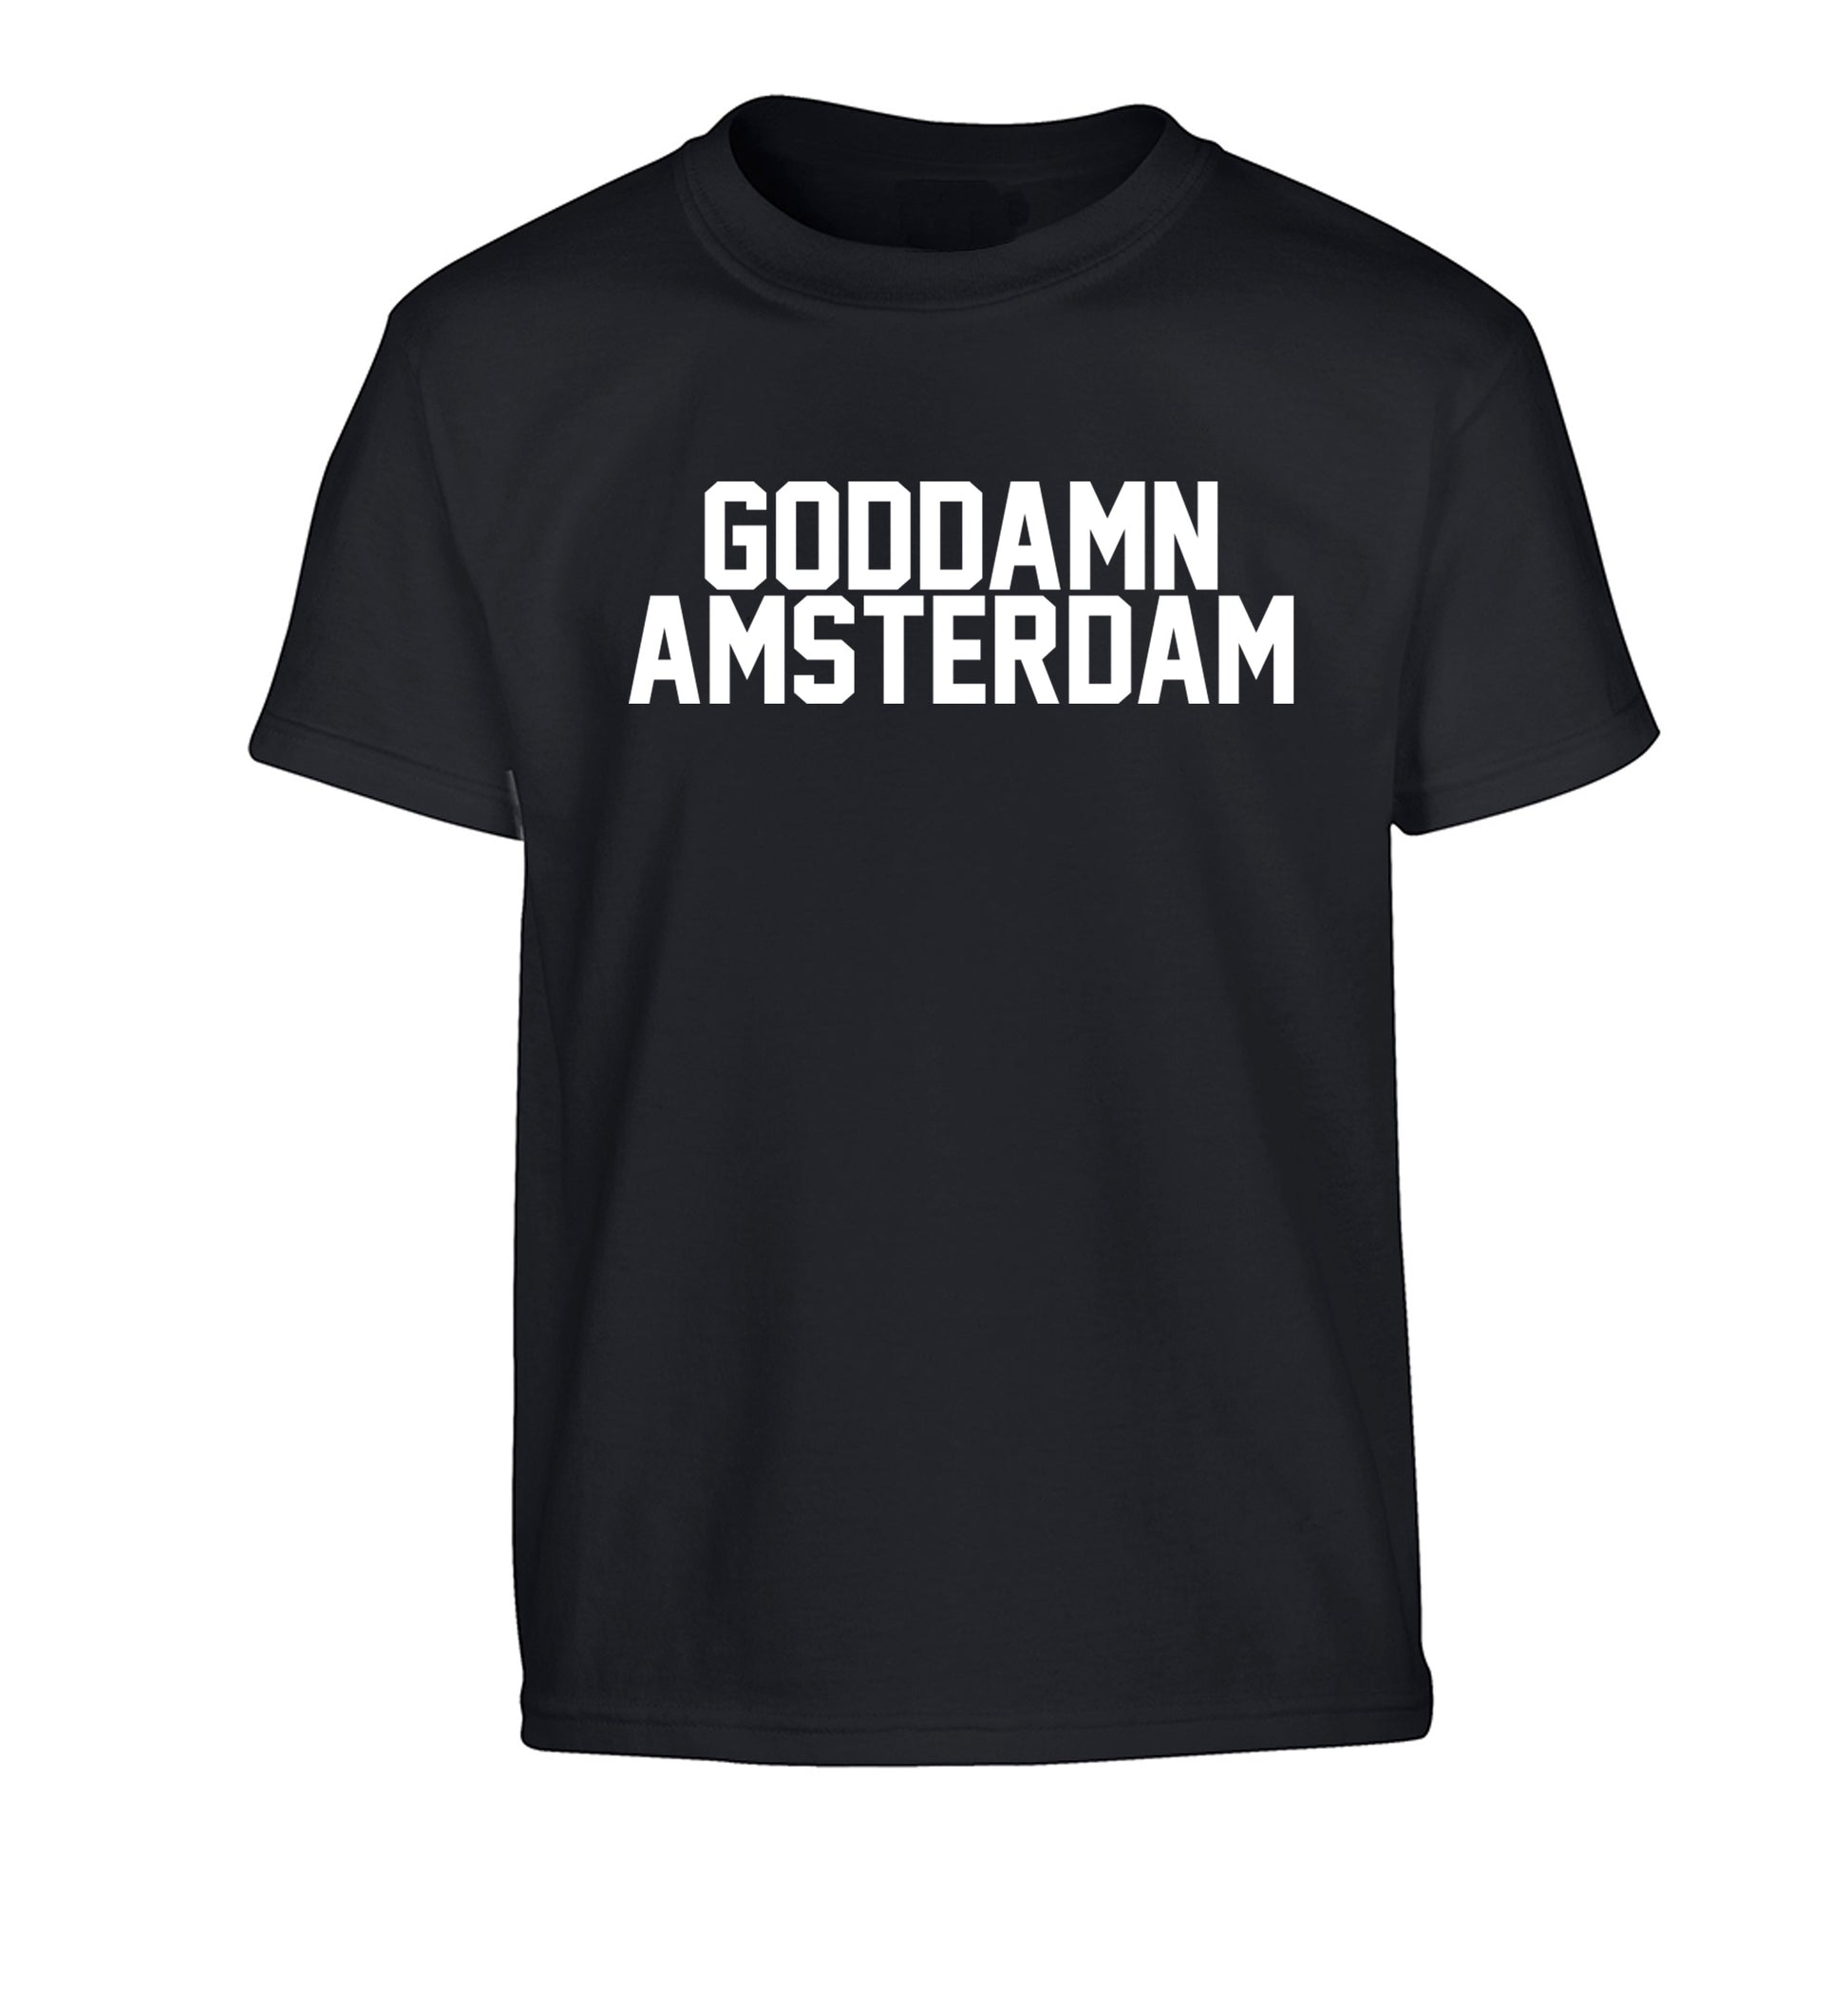 Goddamn Amsterdam Children's black Tshirt 12-13 Years